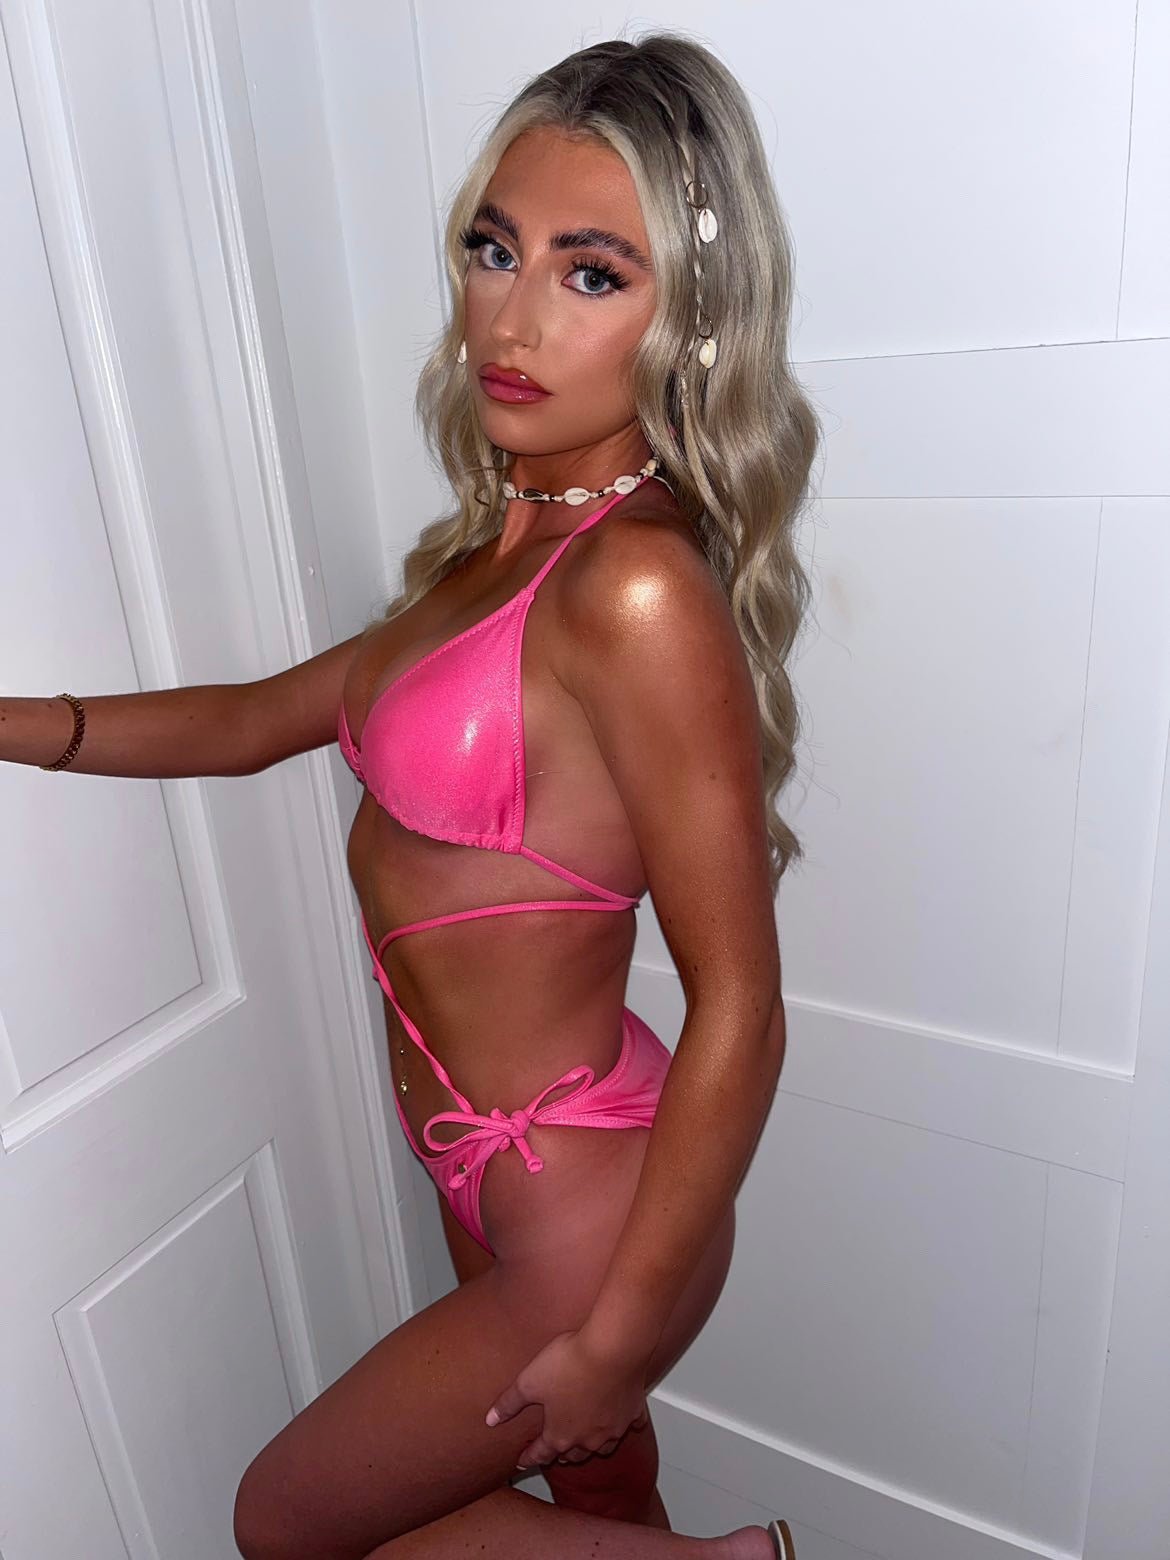 Barbie pink metallic bikini top and bottoms